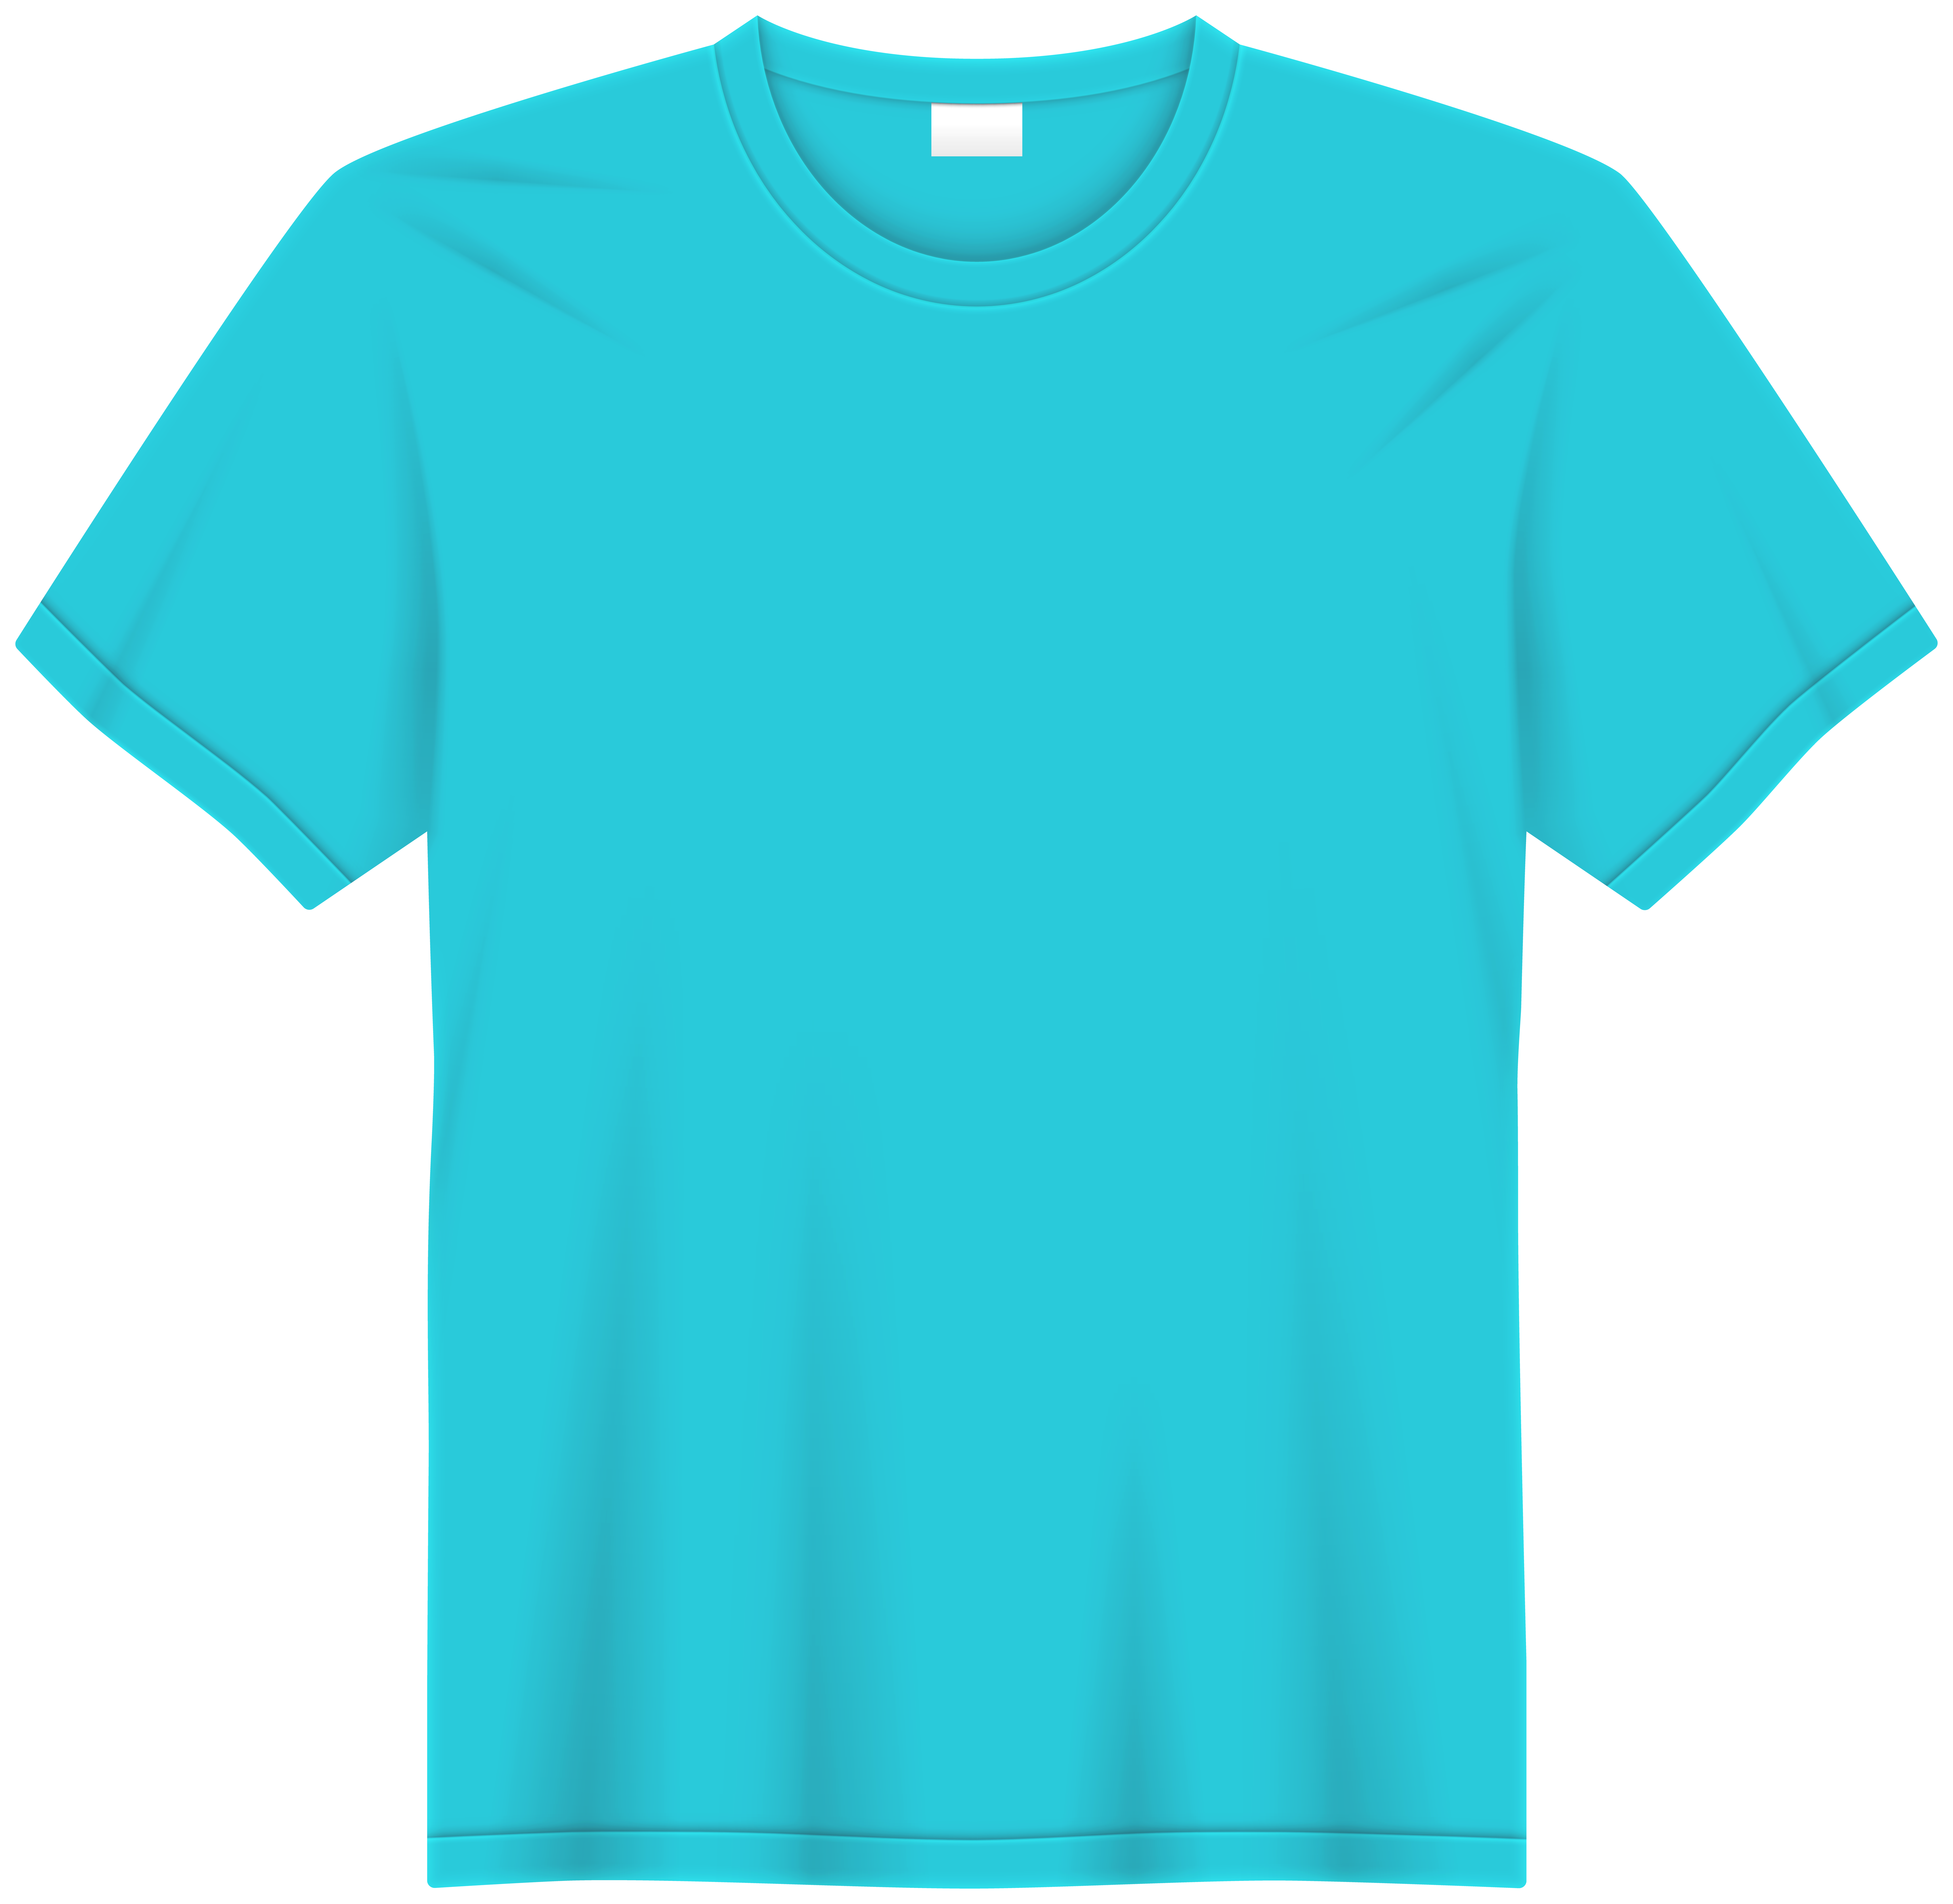 Blue T Shirt PNG Clipart - Best WEB Clipart